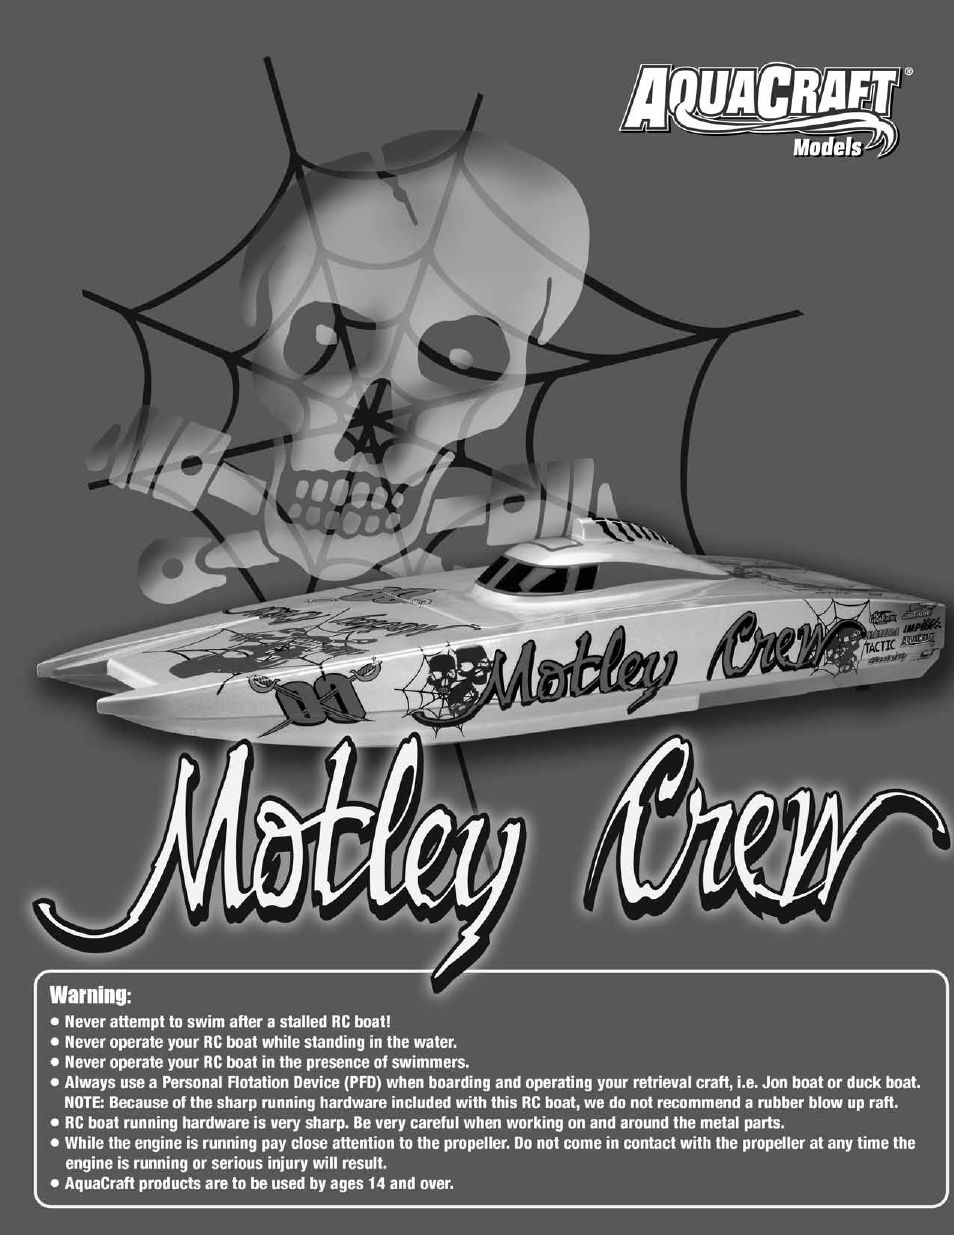 Motley Crew